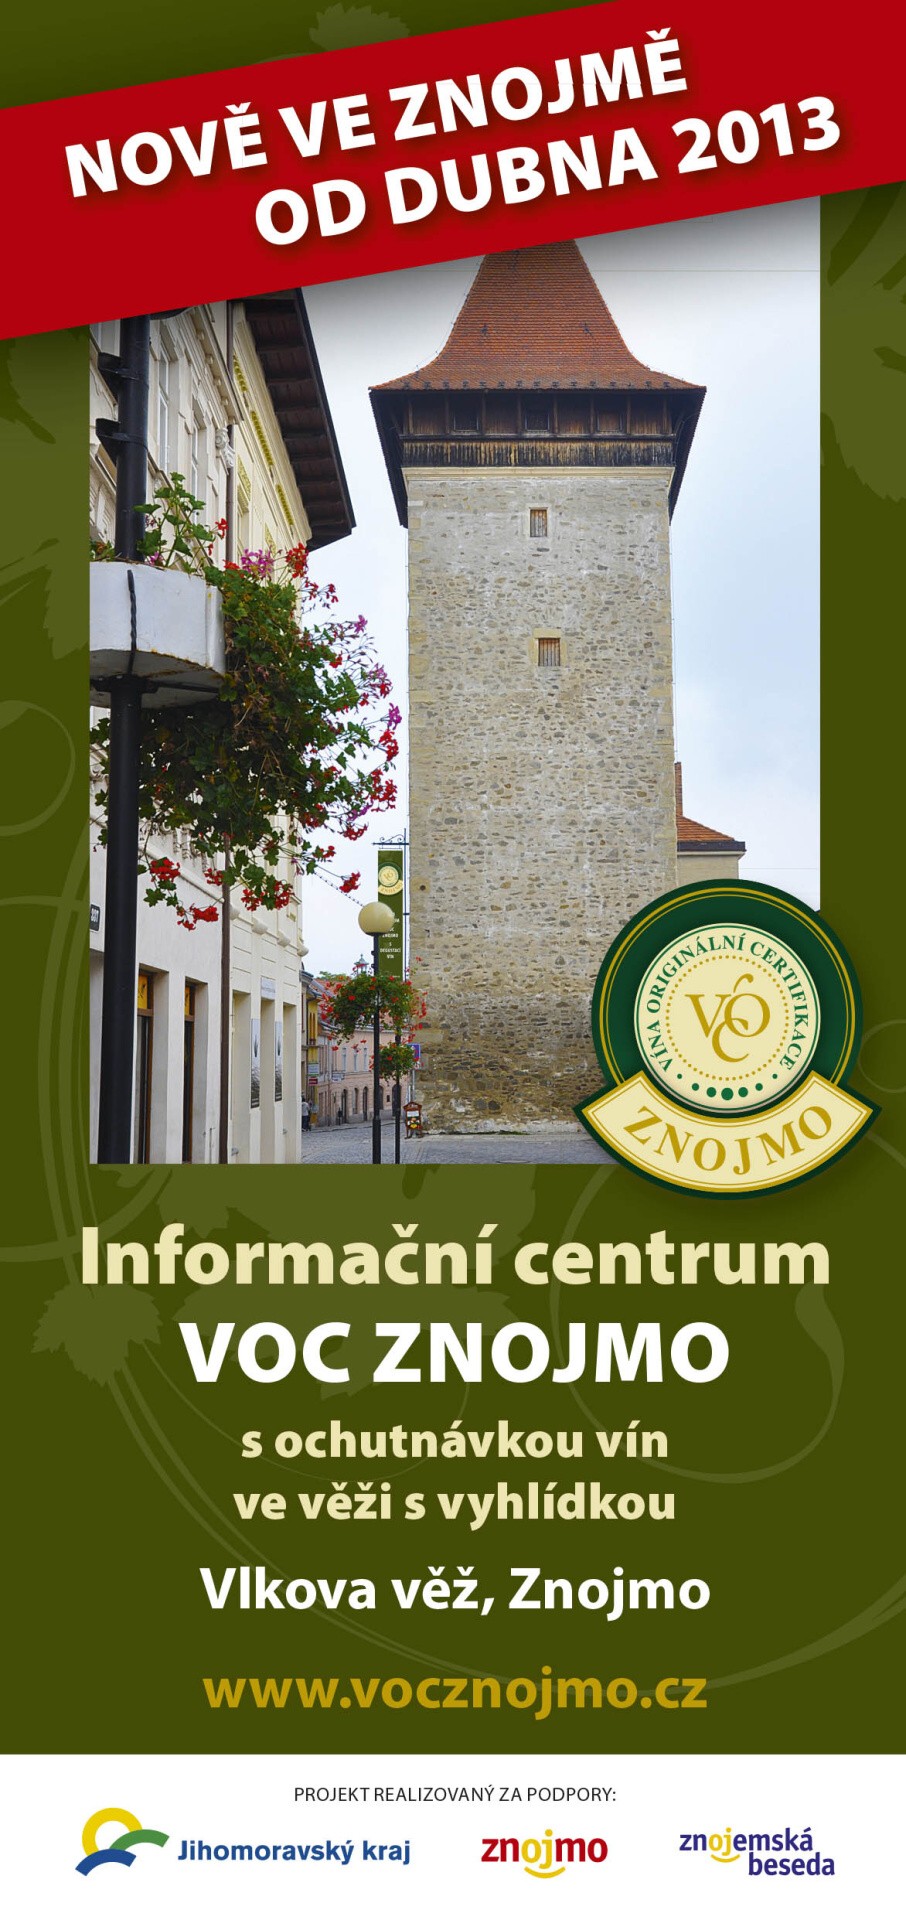 Informační centrum VOC ZNOJMO s ochutnávkou vín_Vlkova věž: otevřeno od 5.4.2013